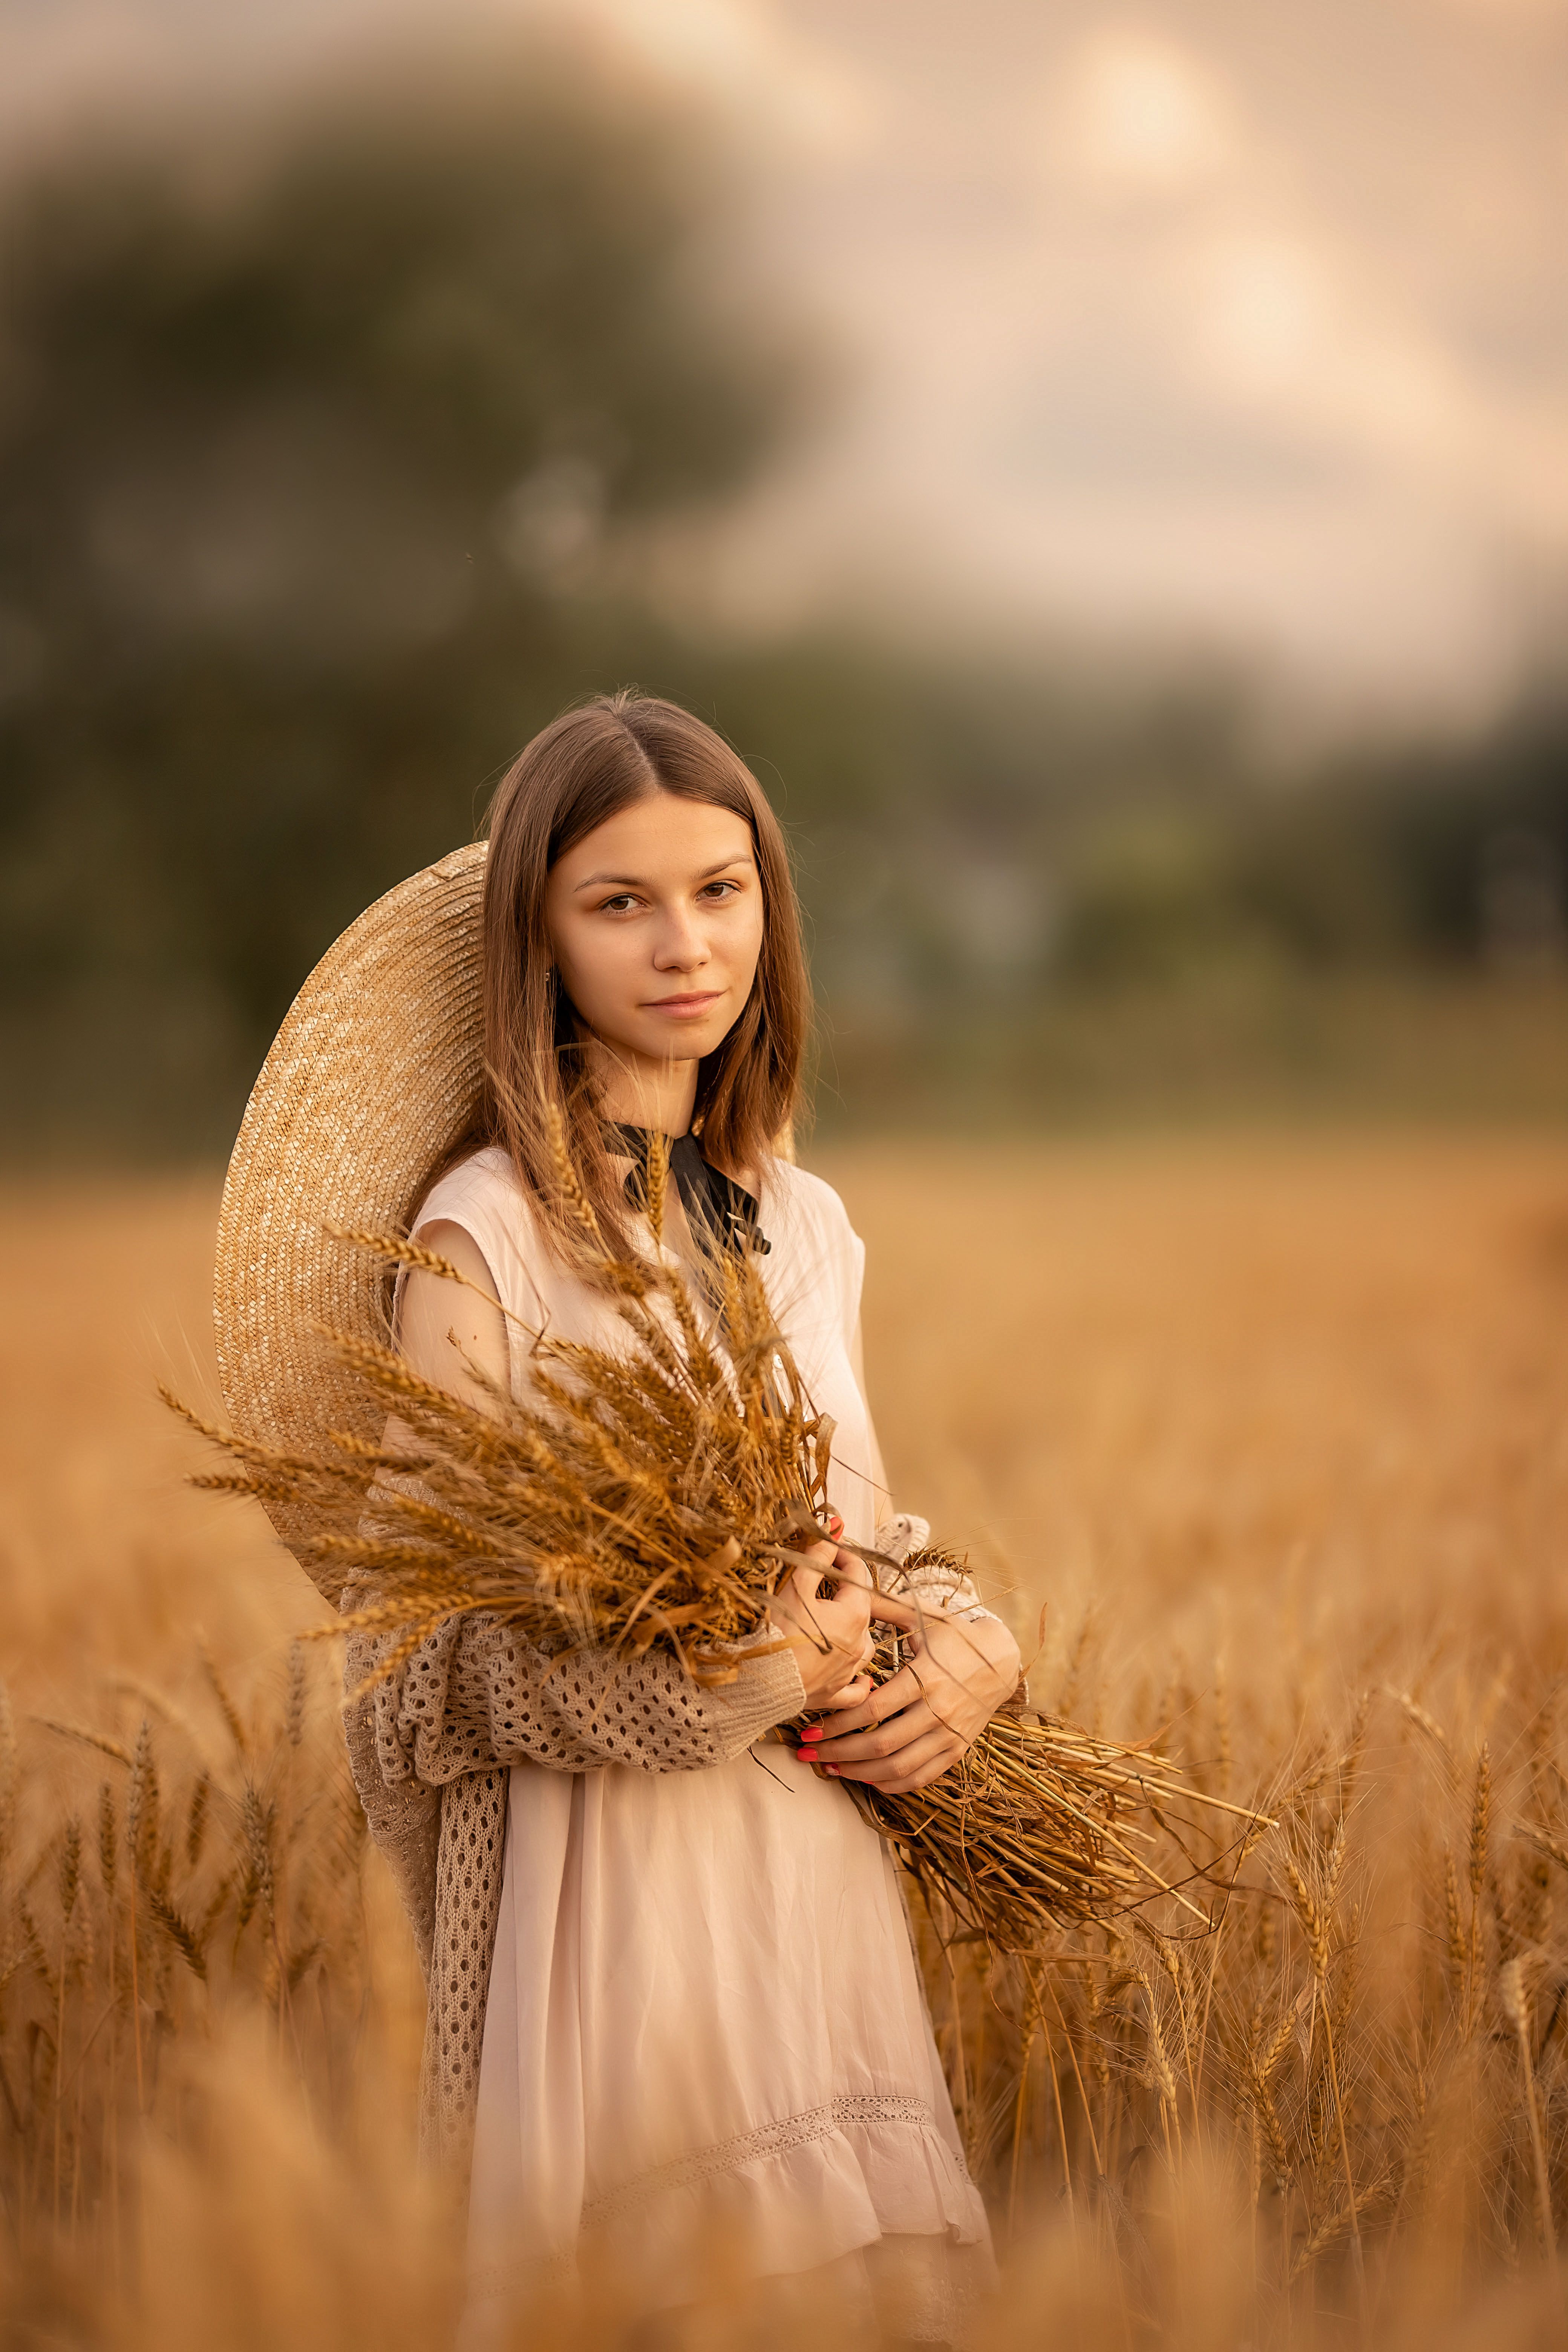 девушка, лето, поле, девушка в шляпе, юность, портрет, Елена Чернигина